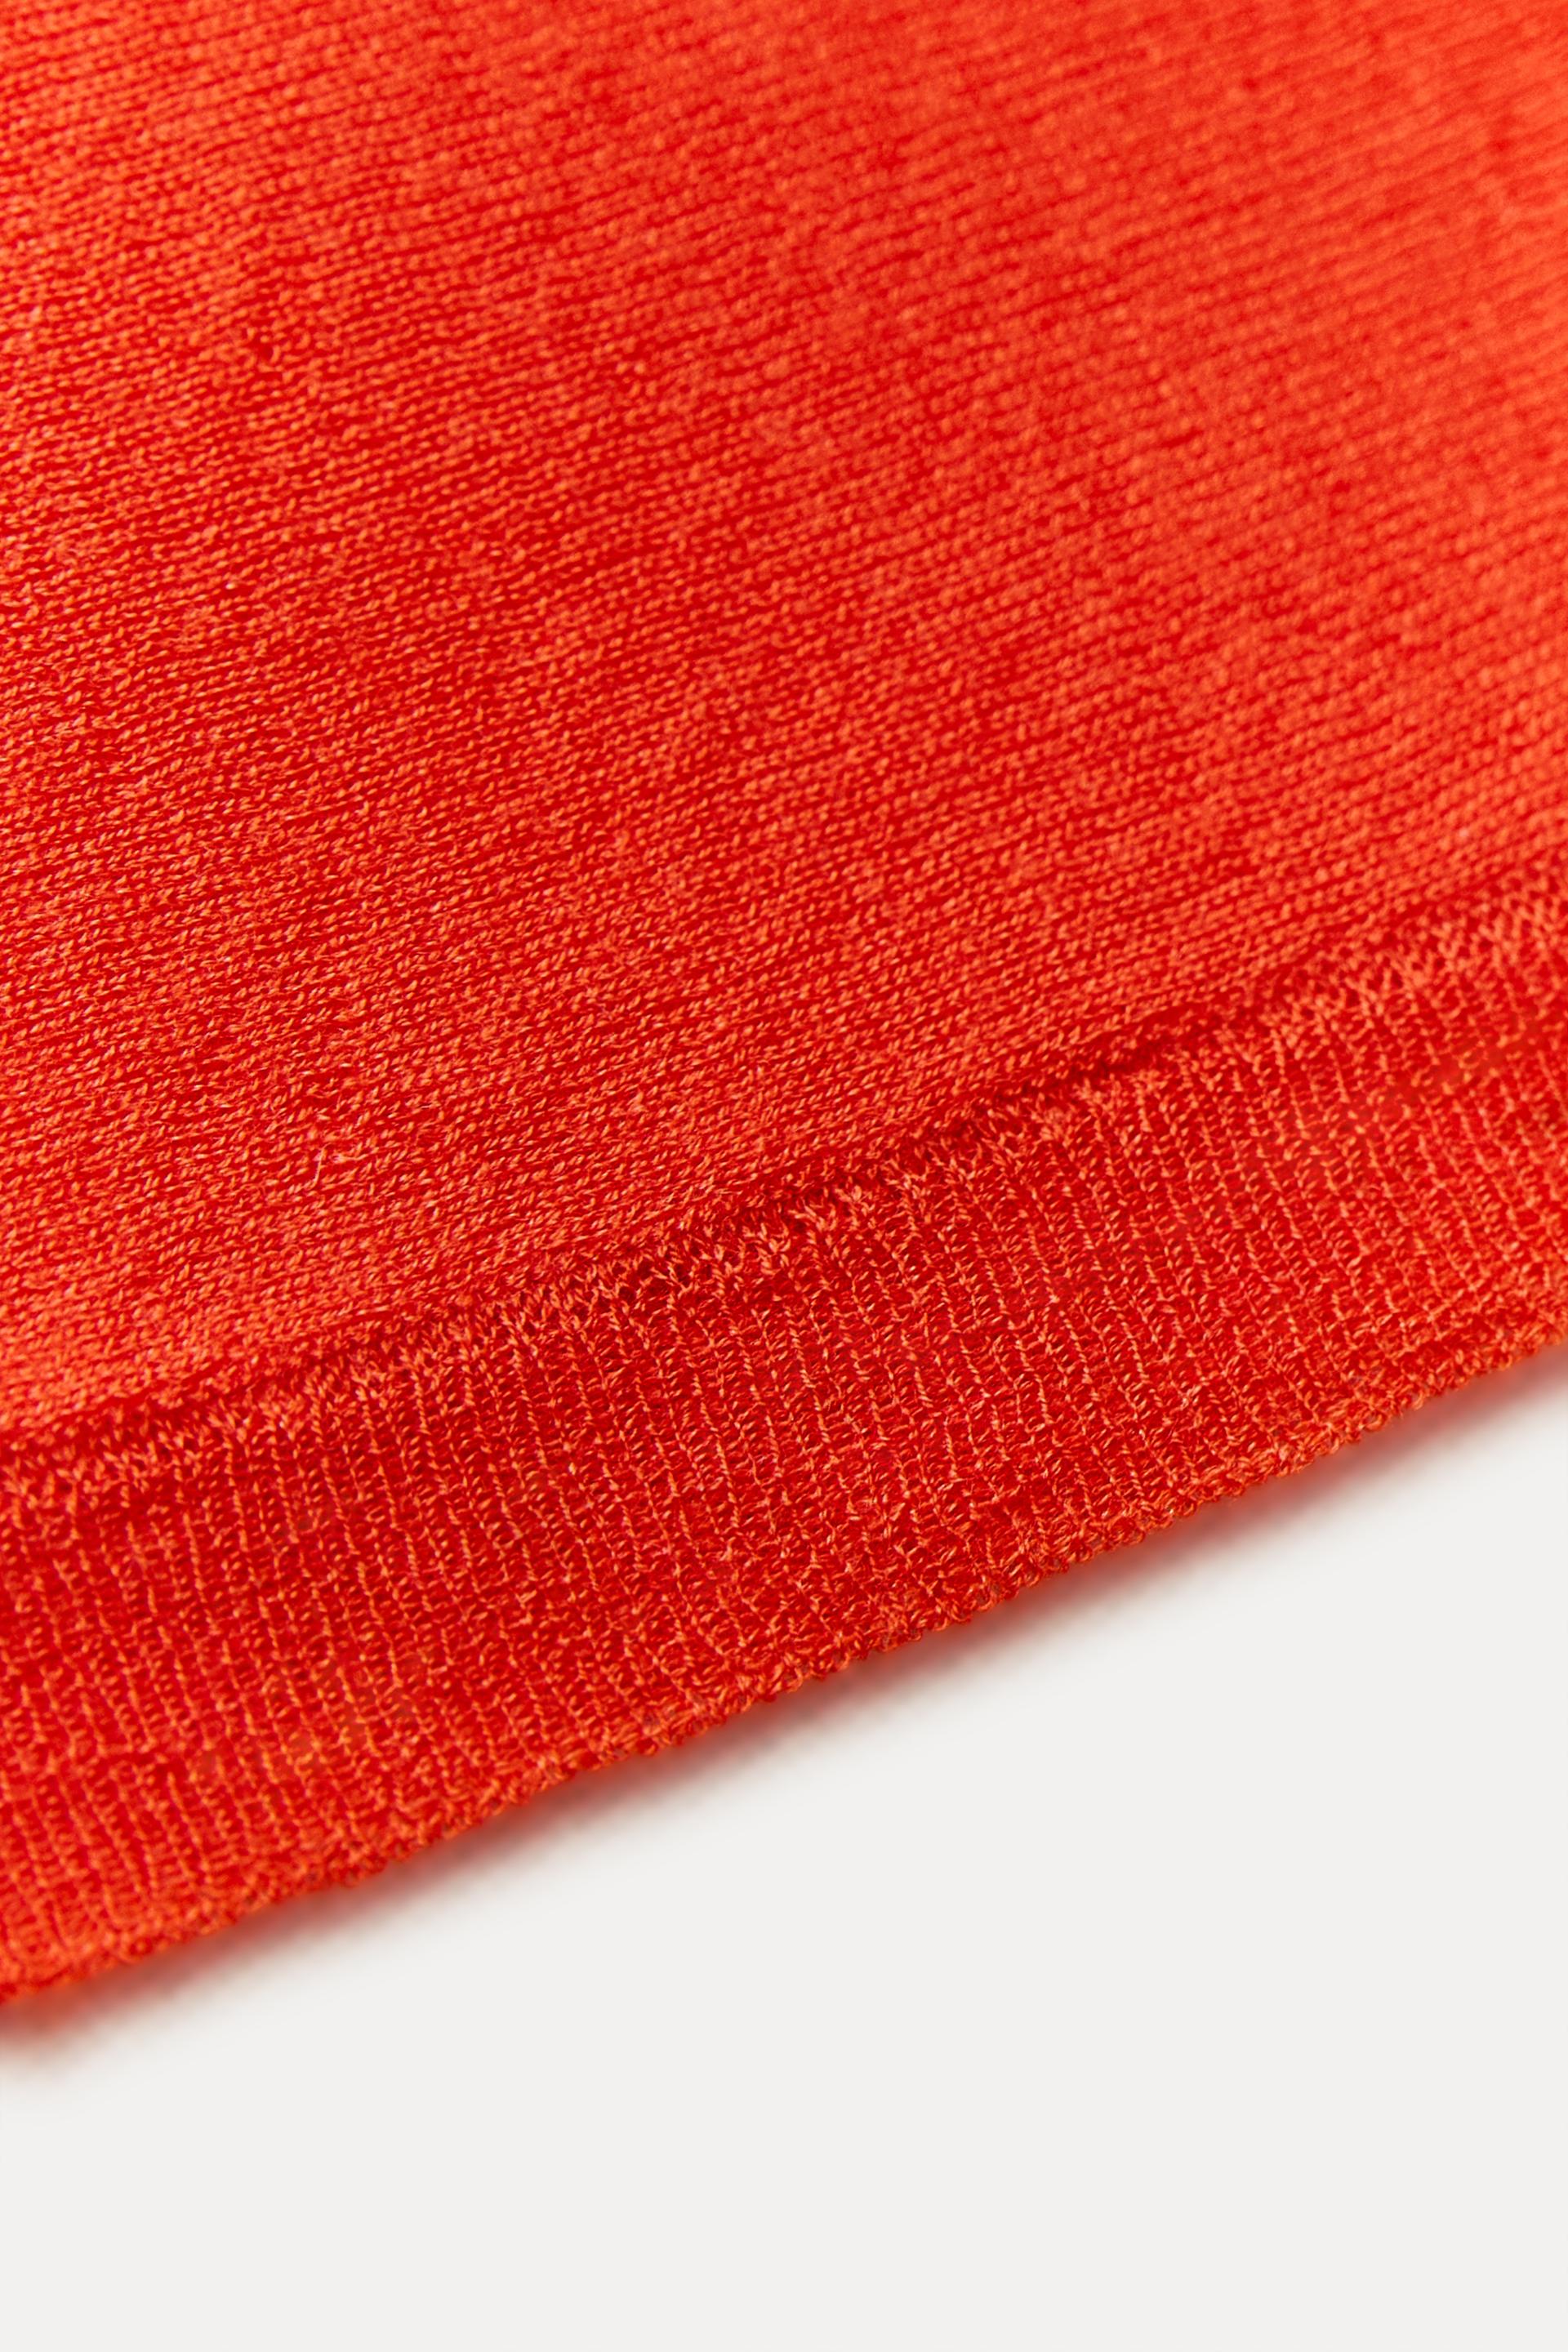 Jersey de lana reciclada color-block naranja y beige - Moda ética - Fieito